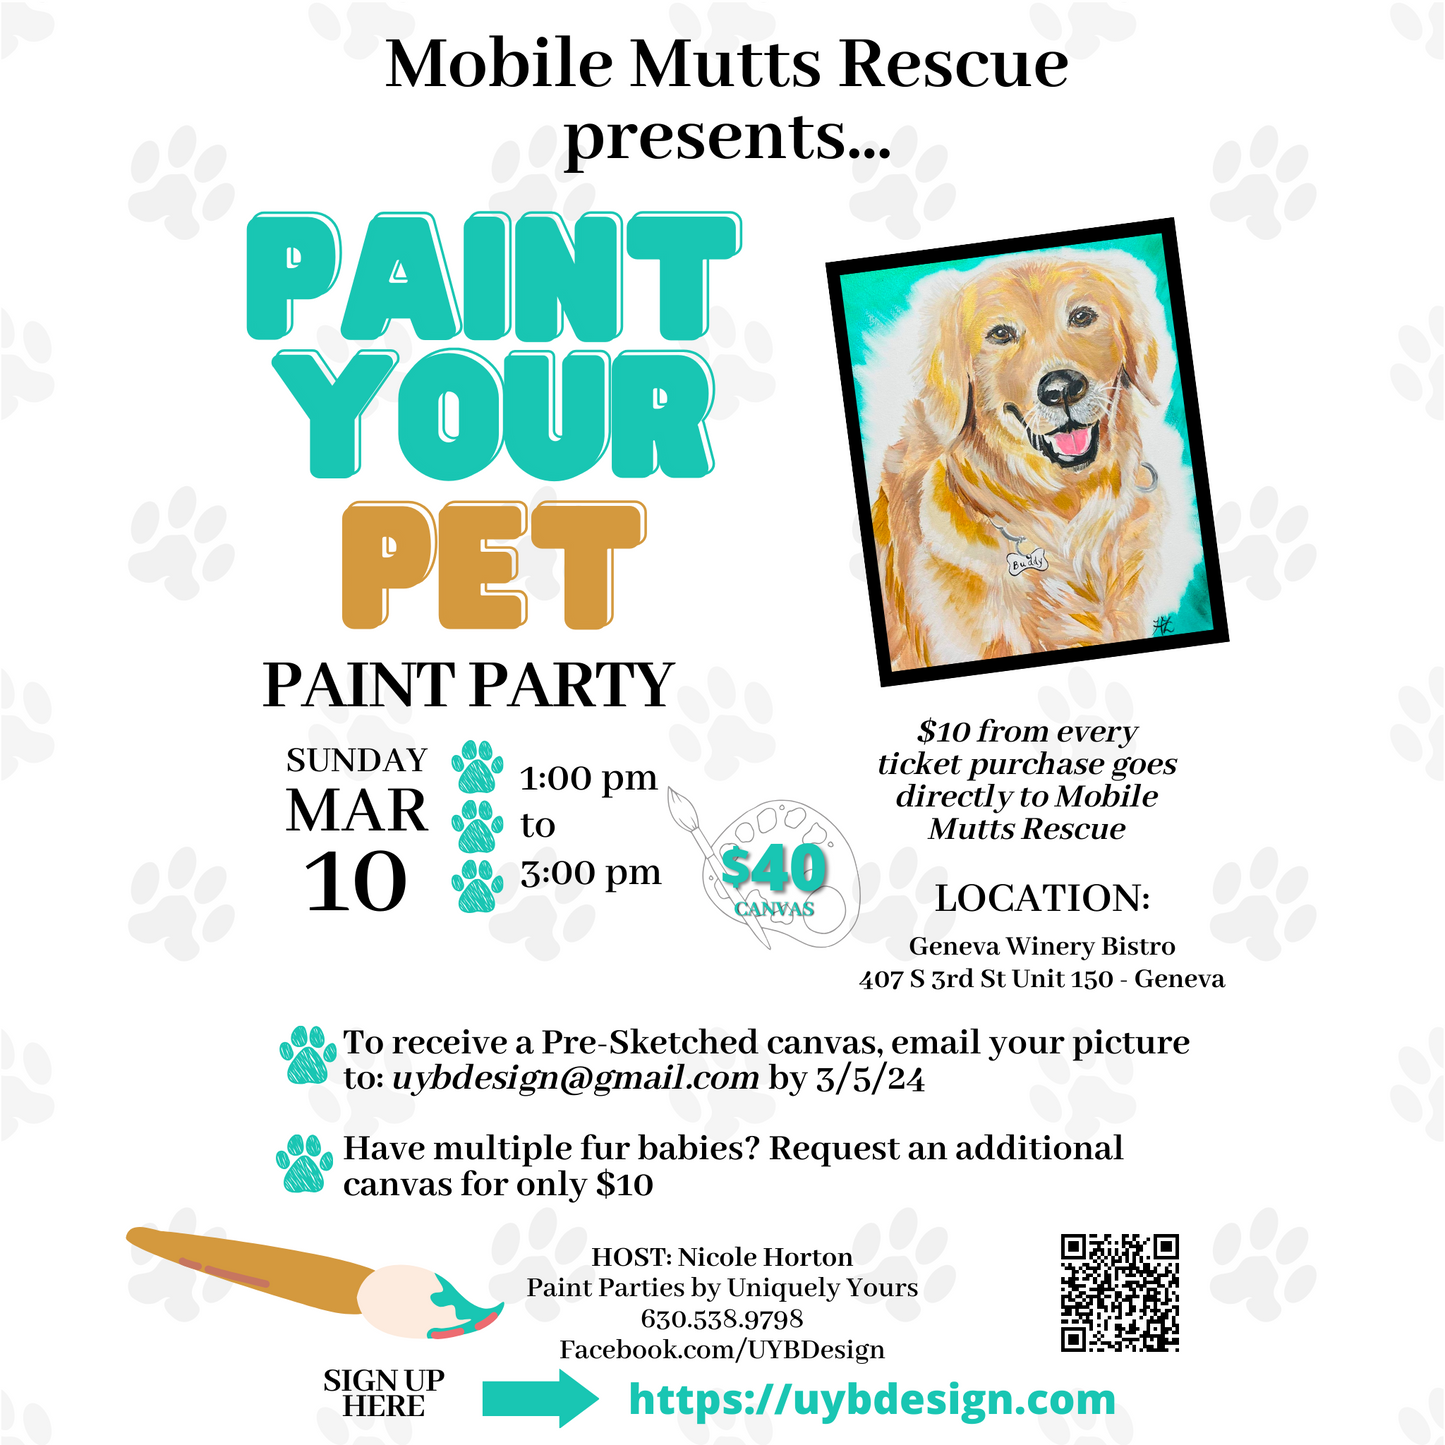 Paint Party - Paint Your Pet